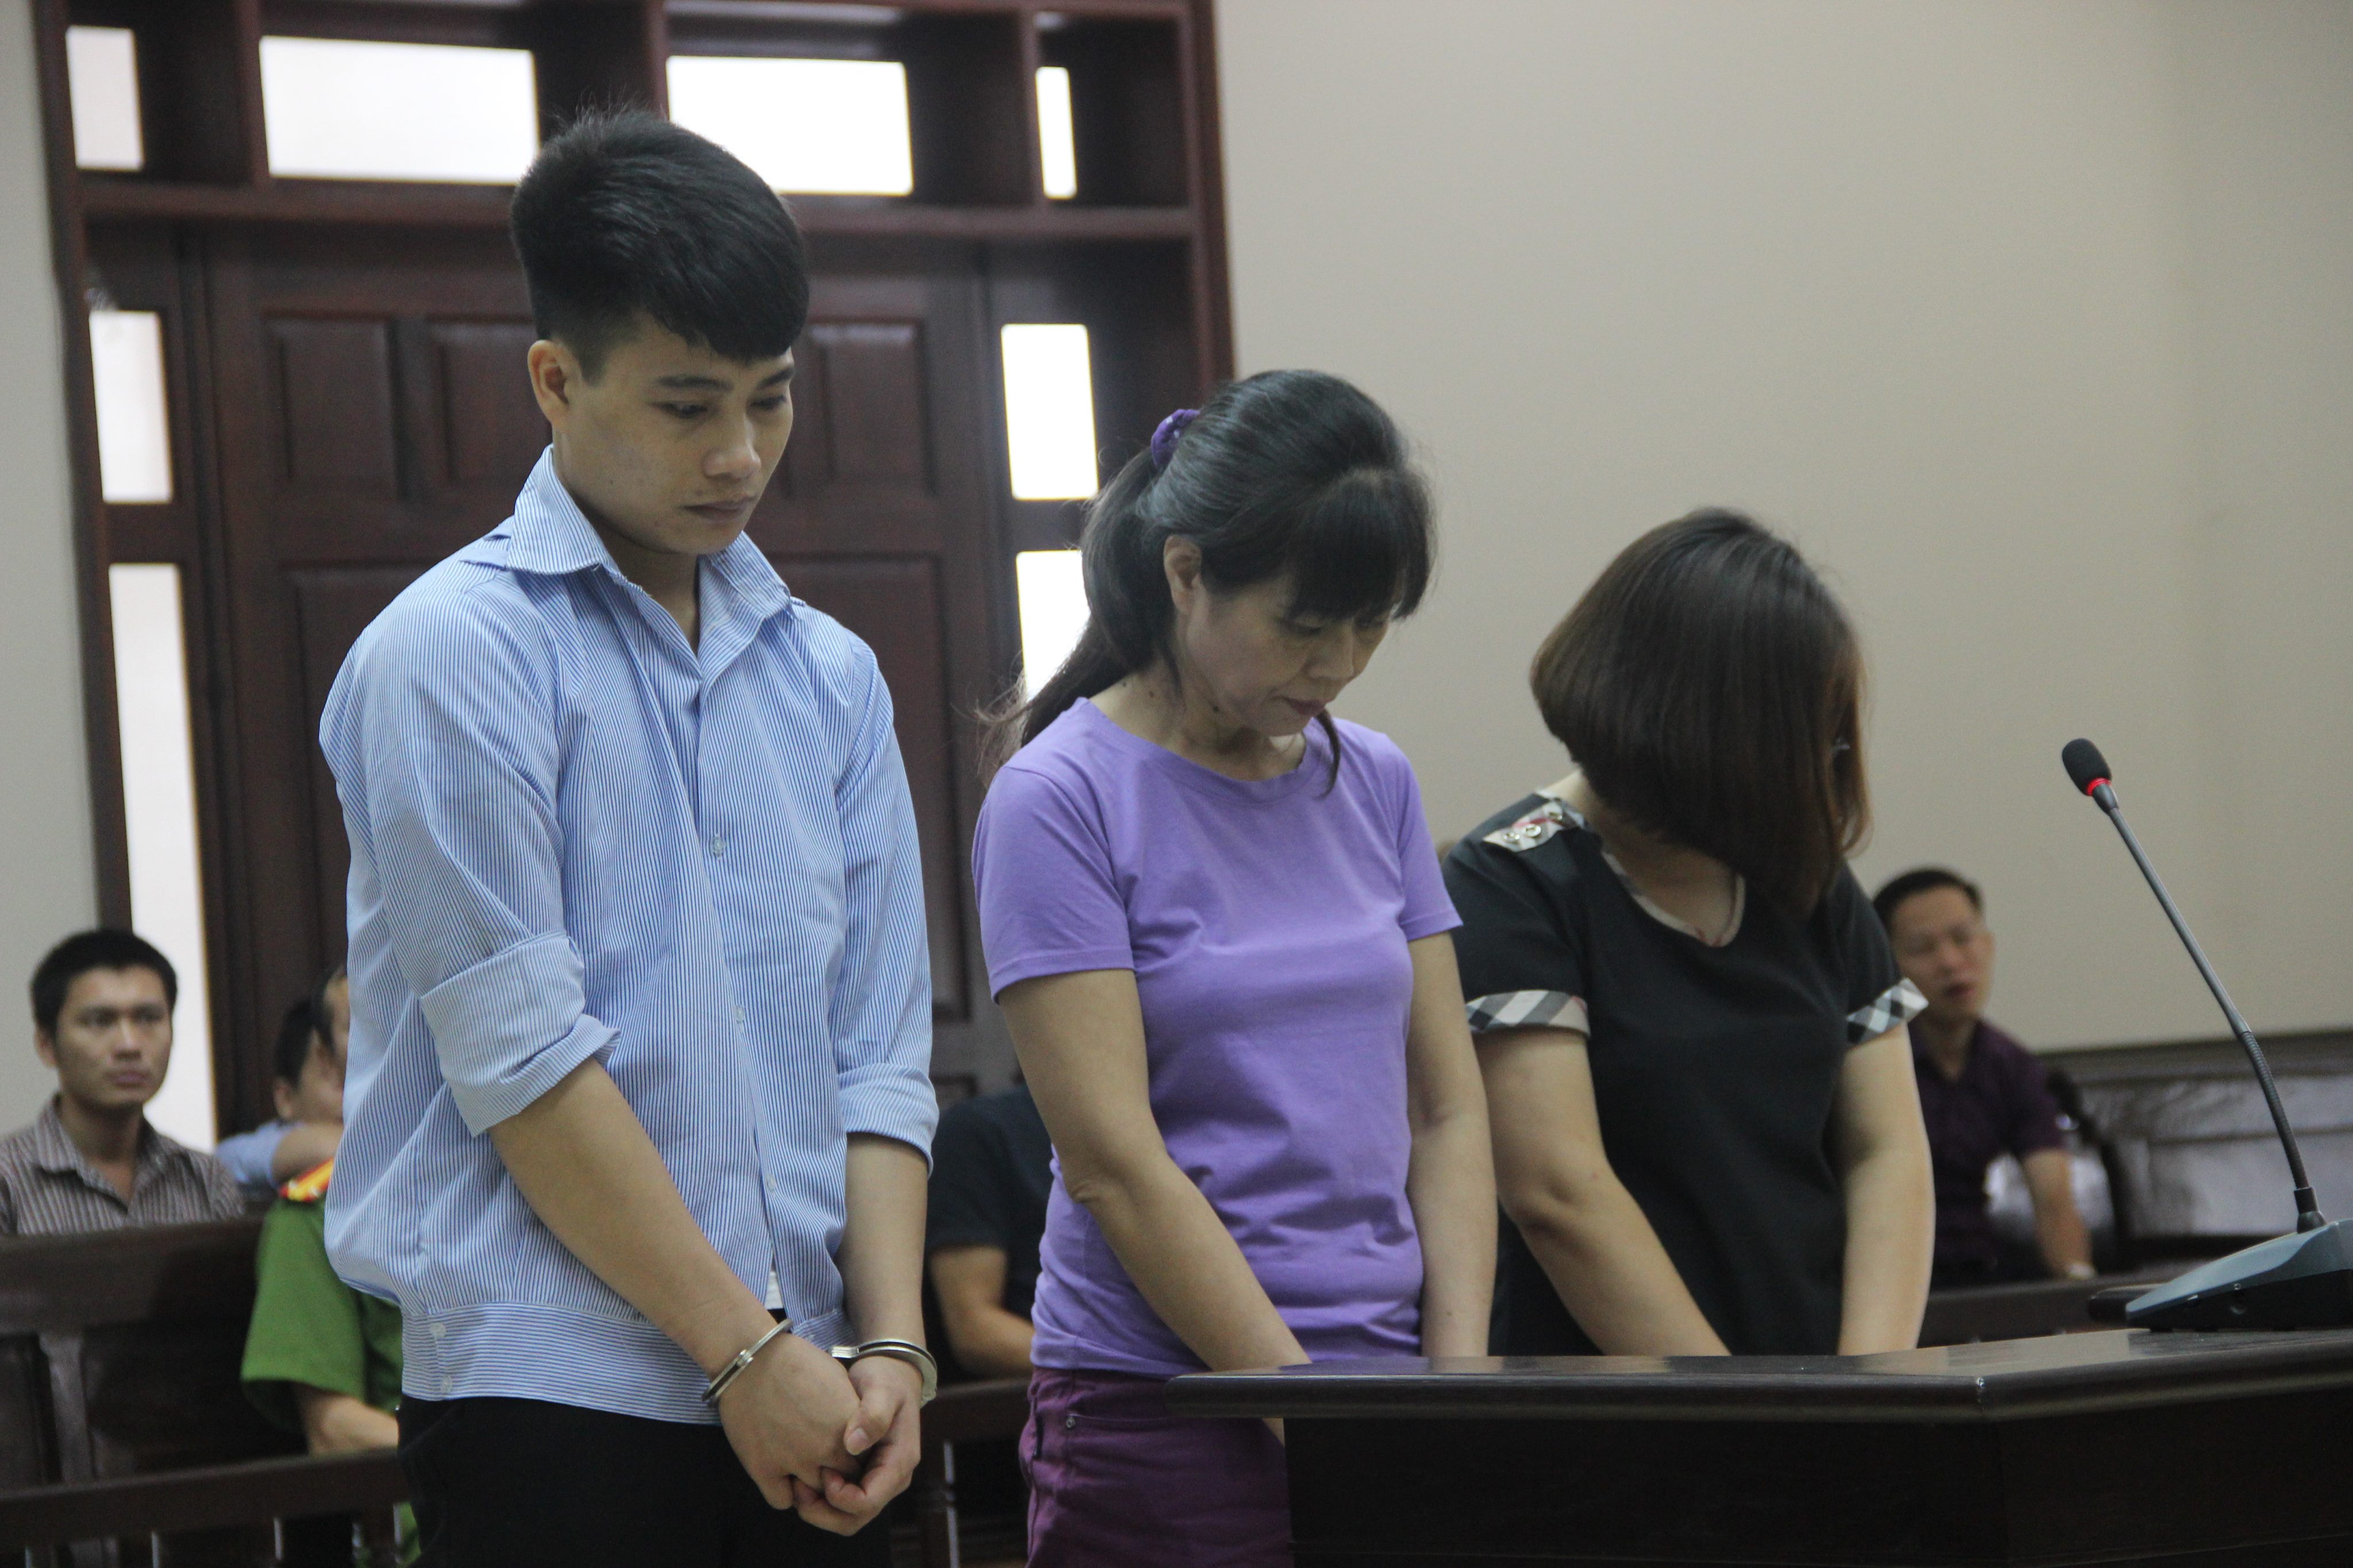 Tòa án cấp cao bác kháng cáo của 3 bị cáo và giữ nguyên bản án sơ thẩm vụ chá quán karaoke 68 Trần Thái Tông